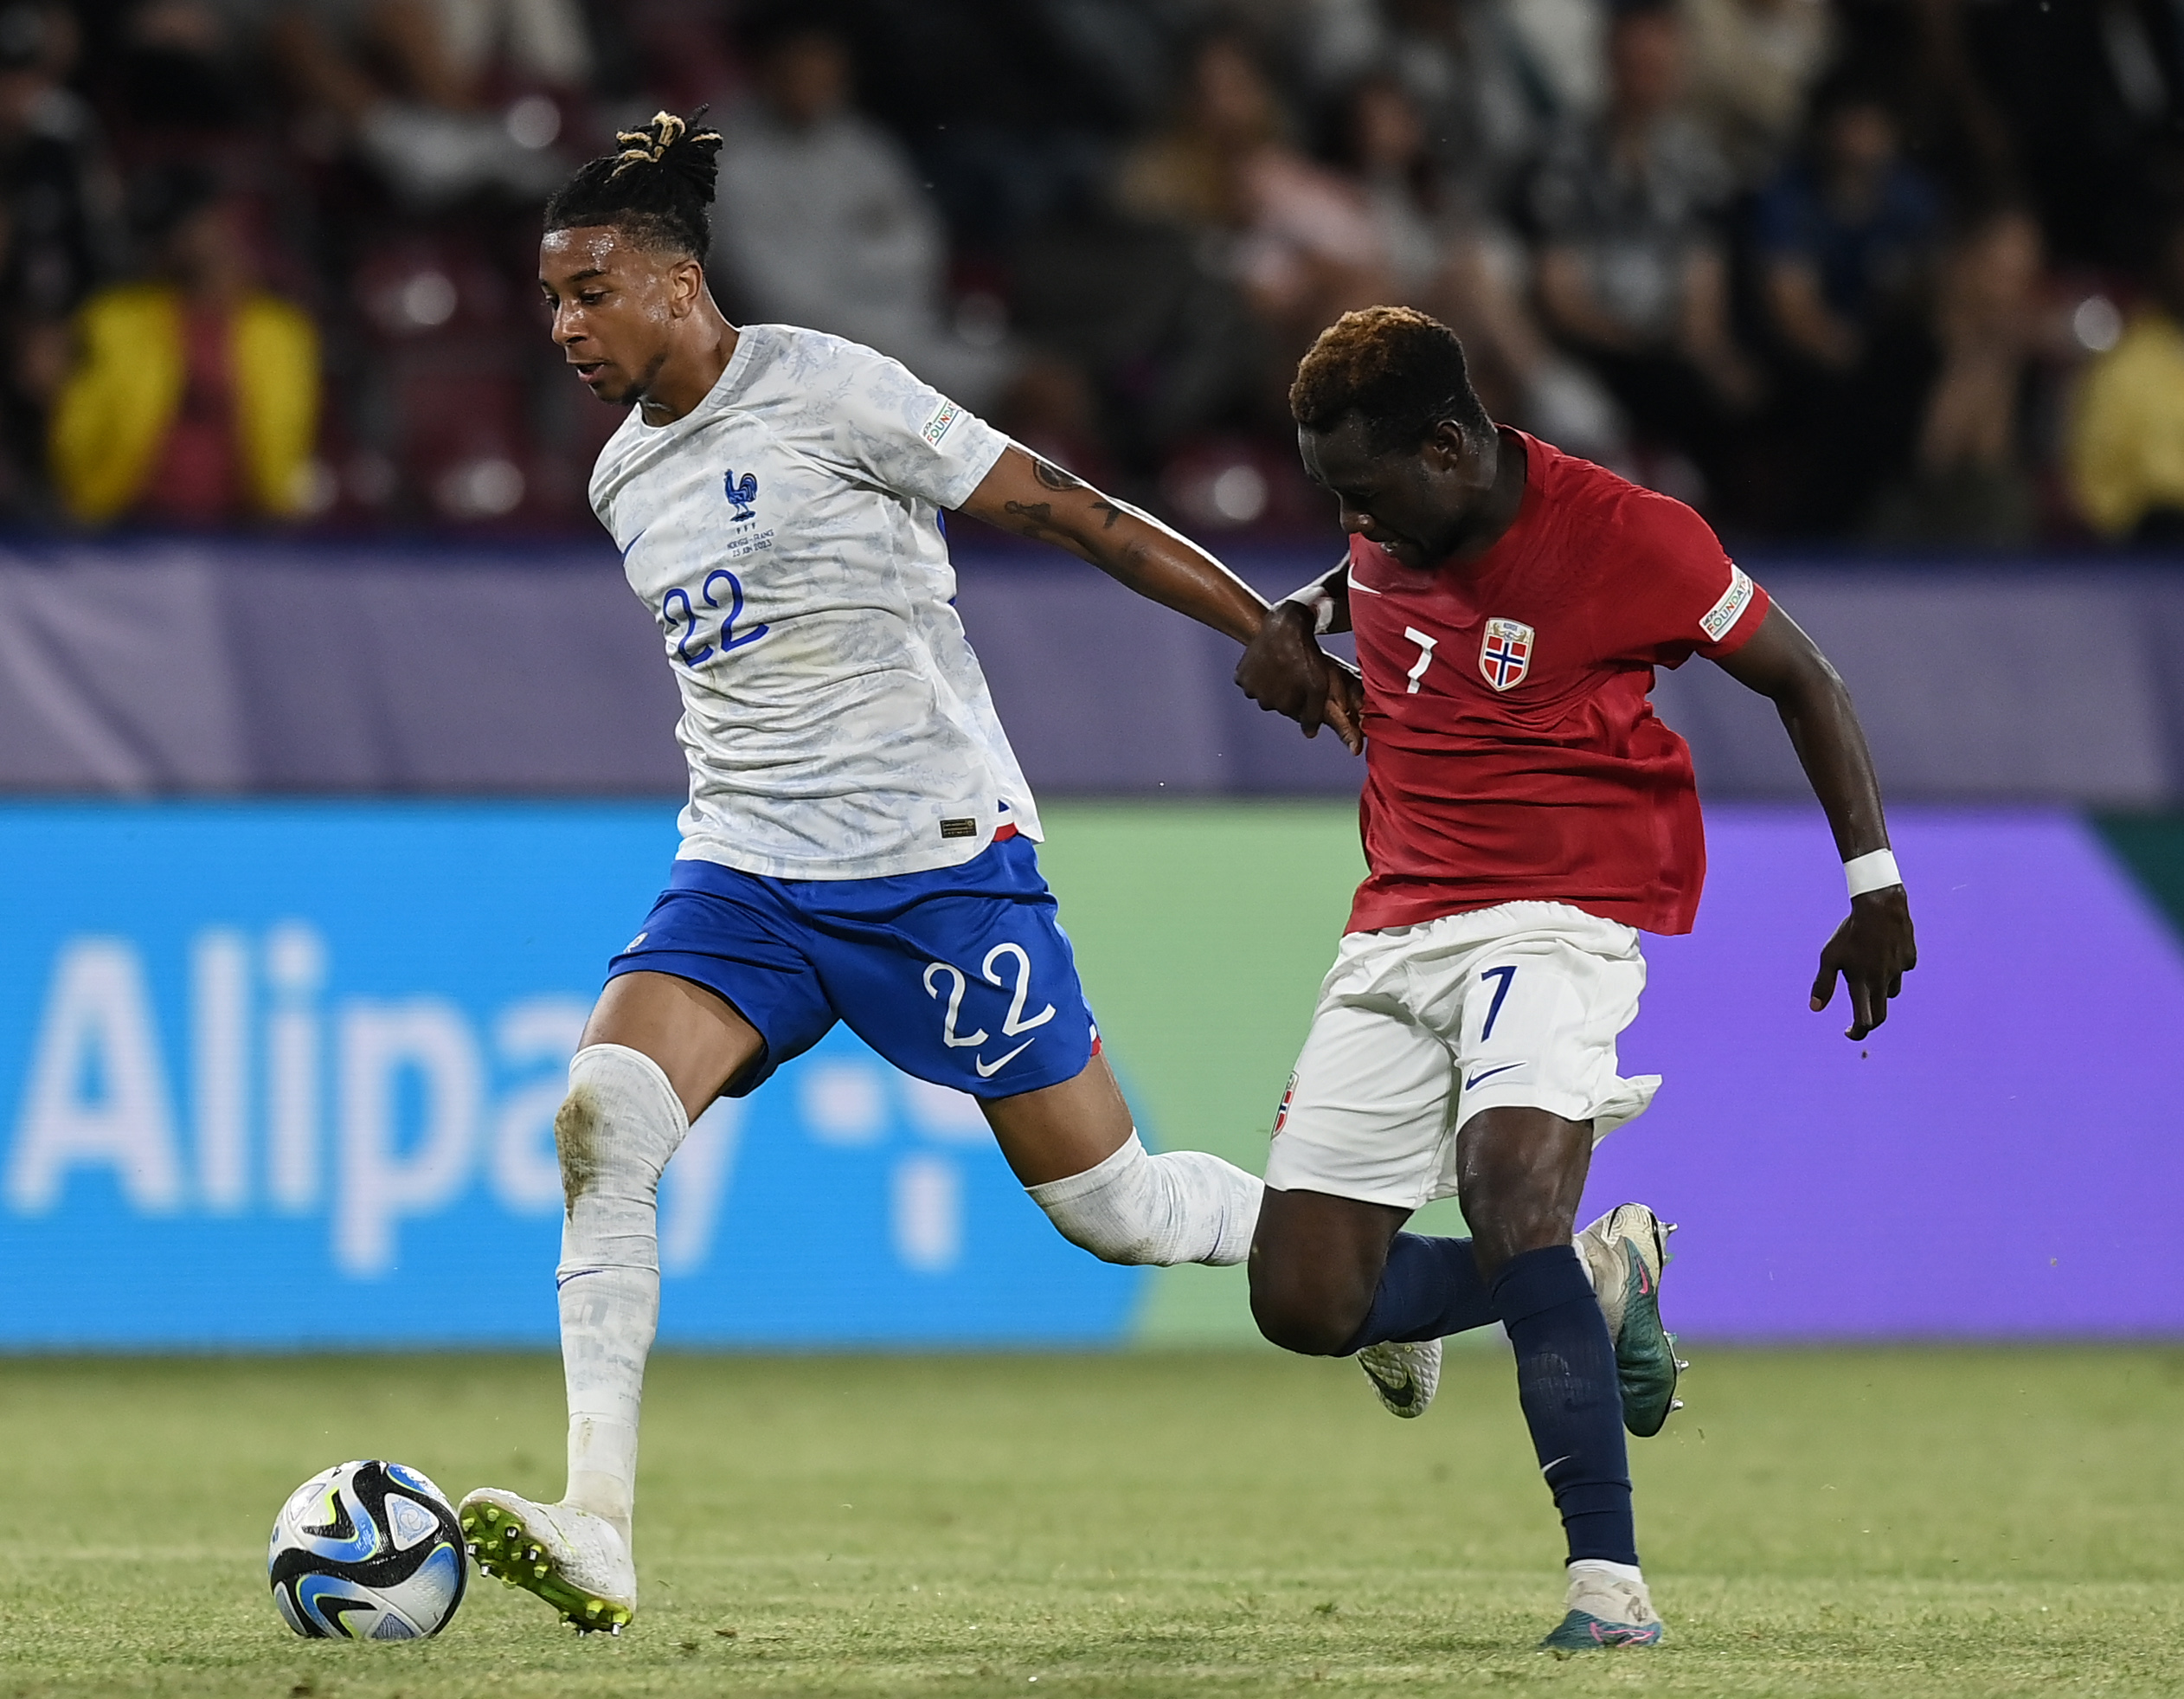 Euro U21 : La France assure l'essentiel contre la Norvège, mais doit patienter pour la qualif'